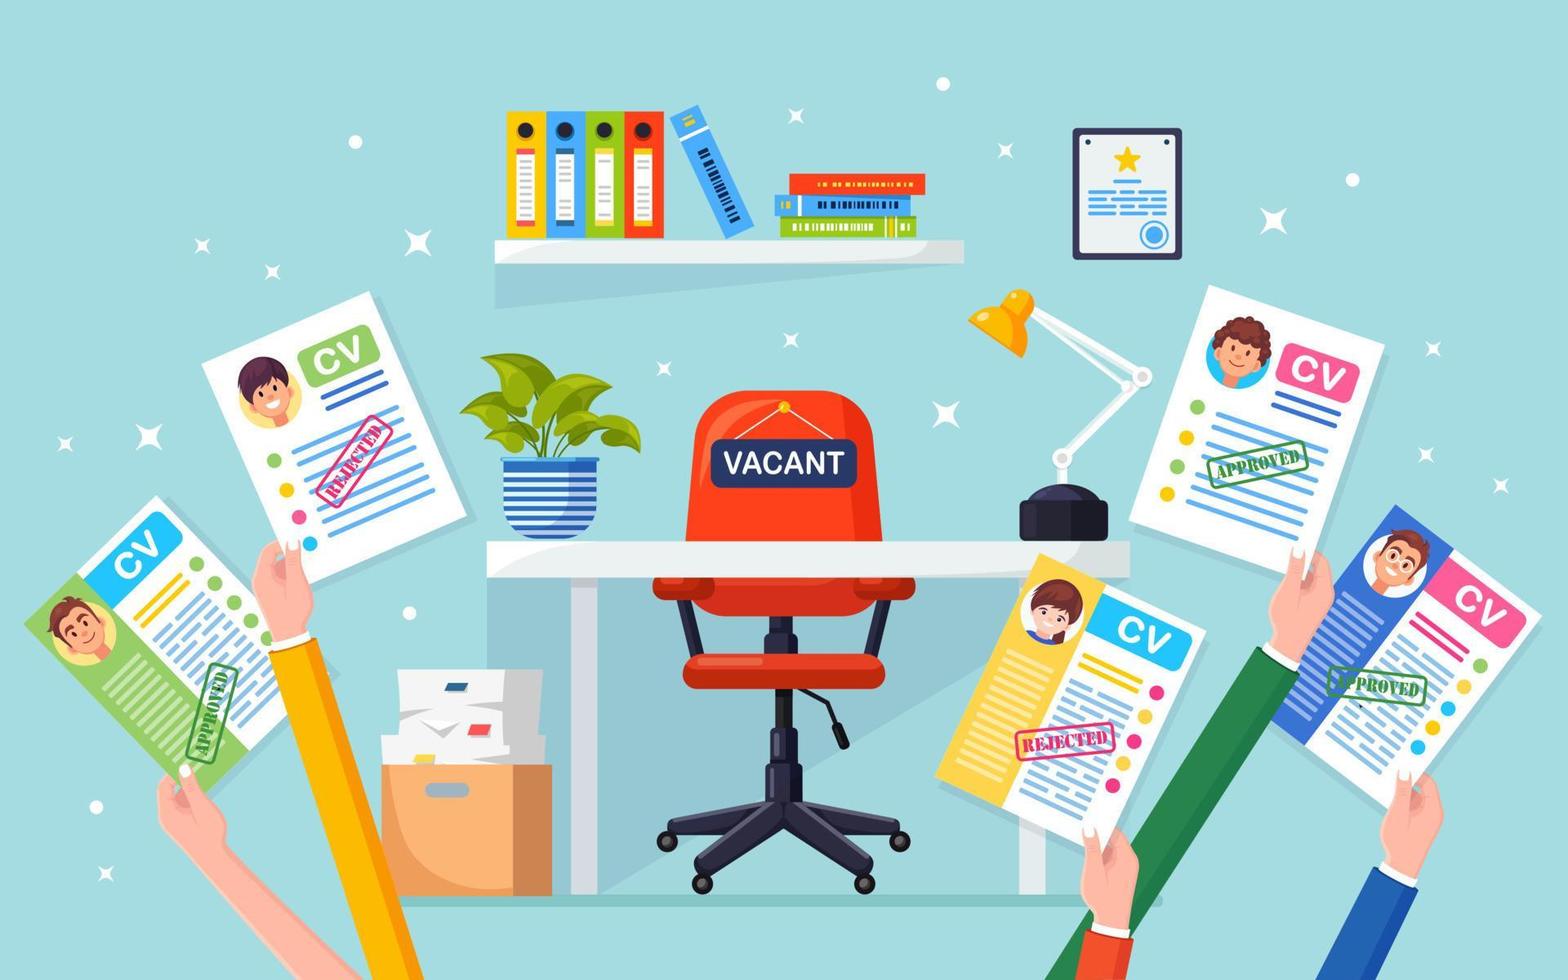 CV företags-CV i handen ovanför kontorsstolen. rekrytering, sök arbetsgivare, anställning. ledig plats vektor